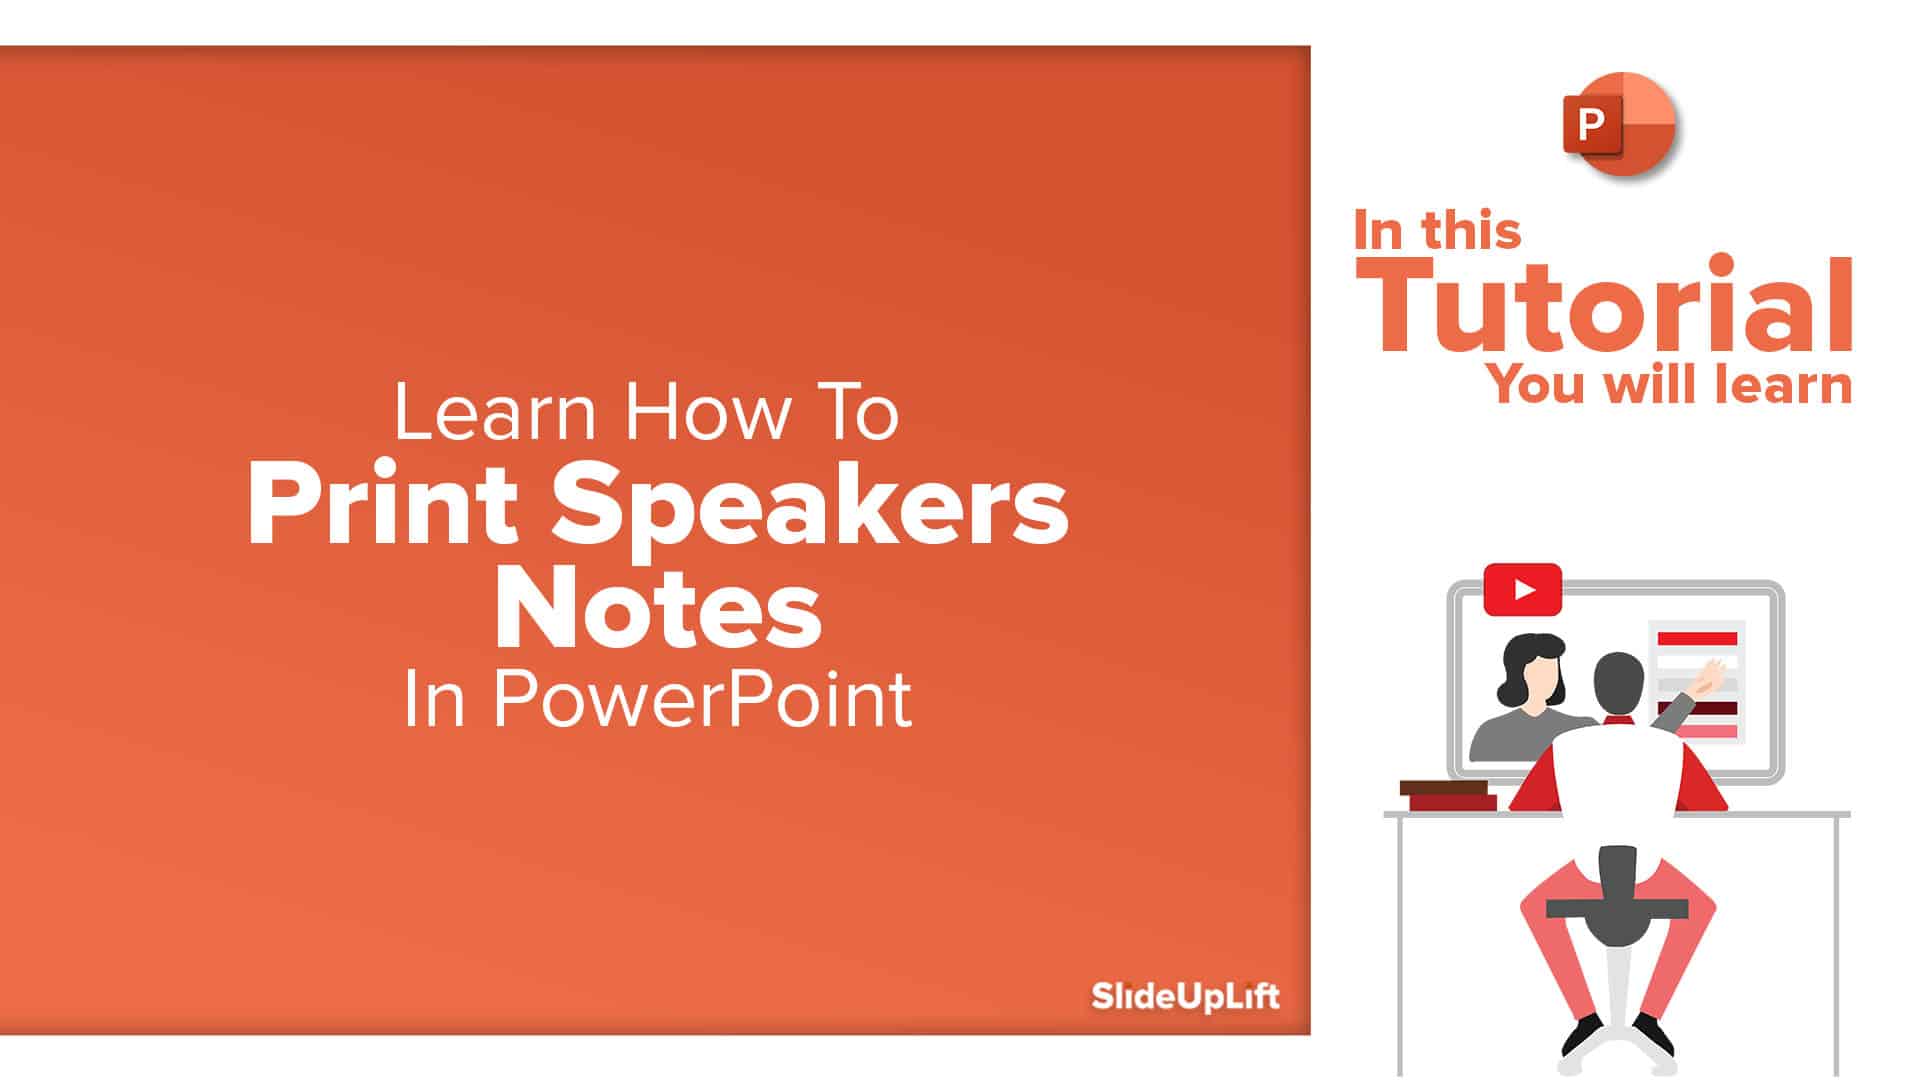 powerpoint presentation play on loop